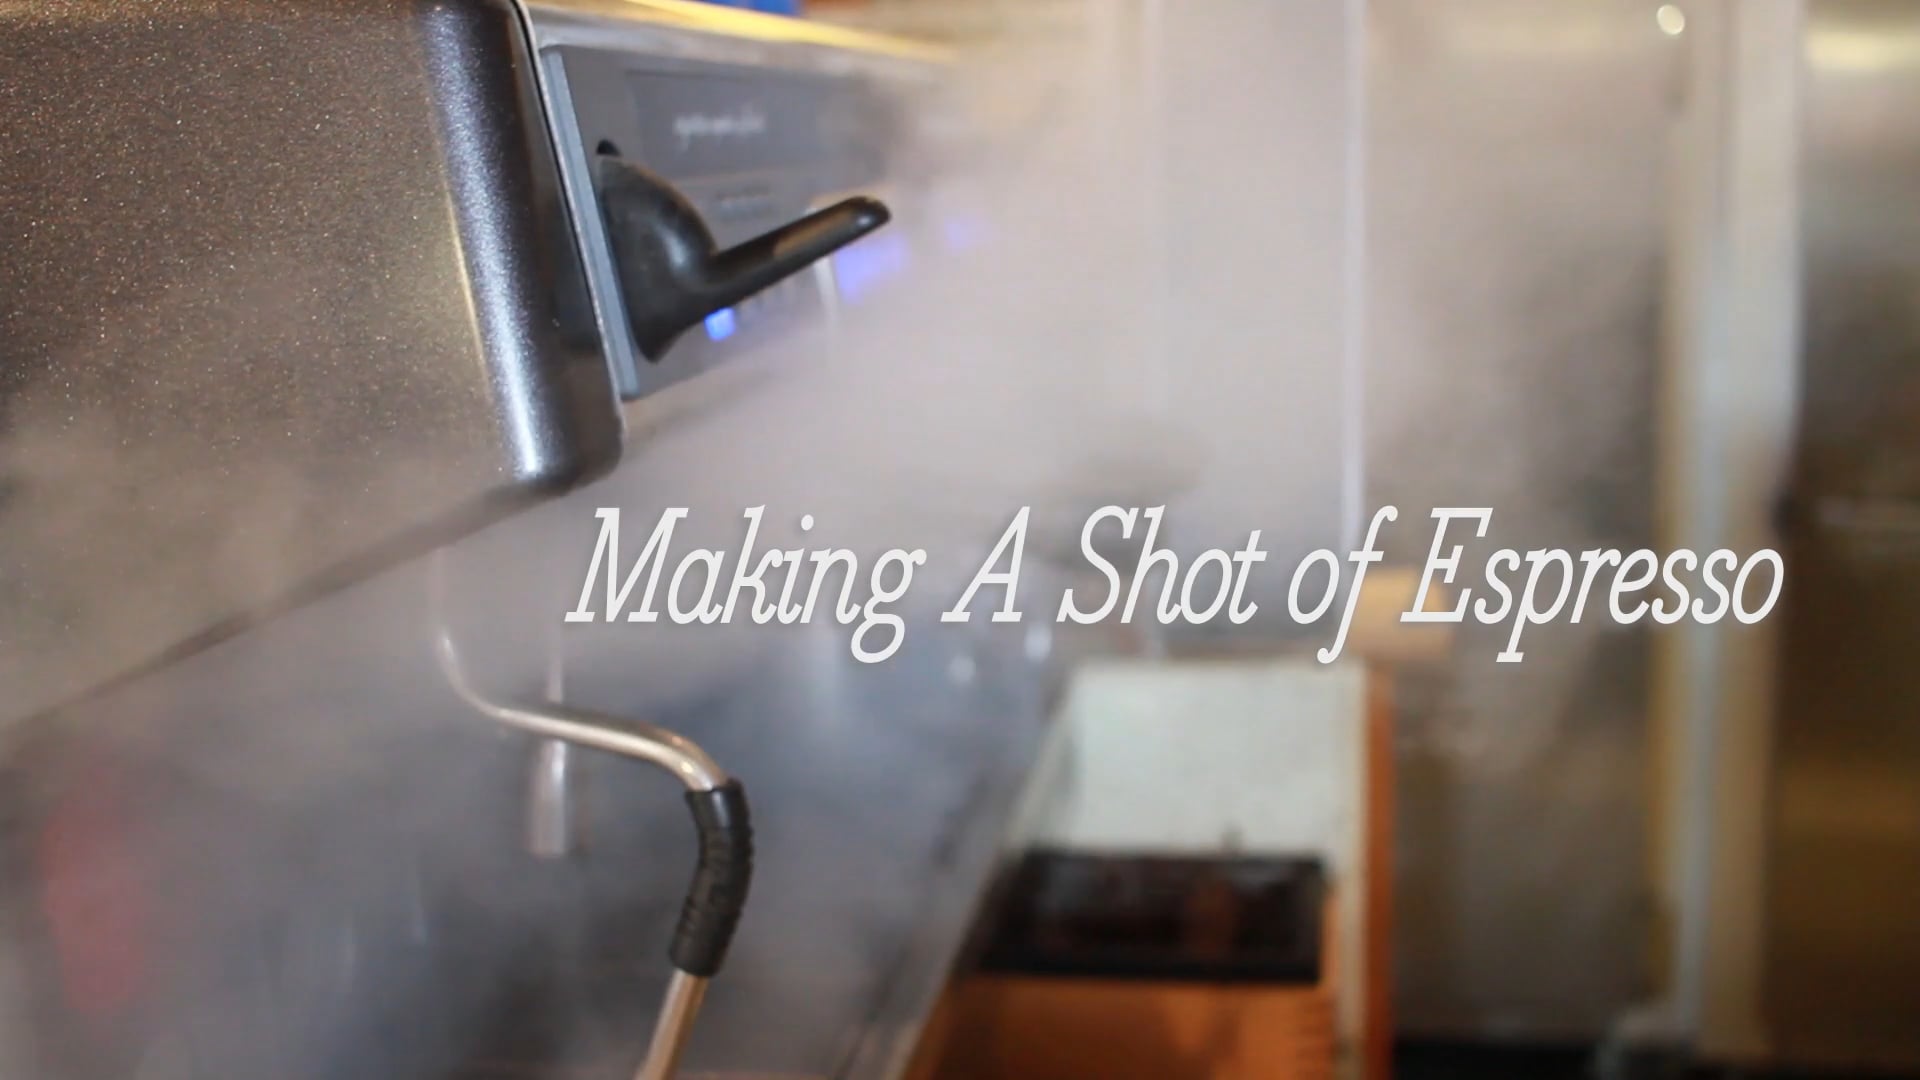 How to Make a Shot of Espresso